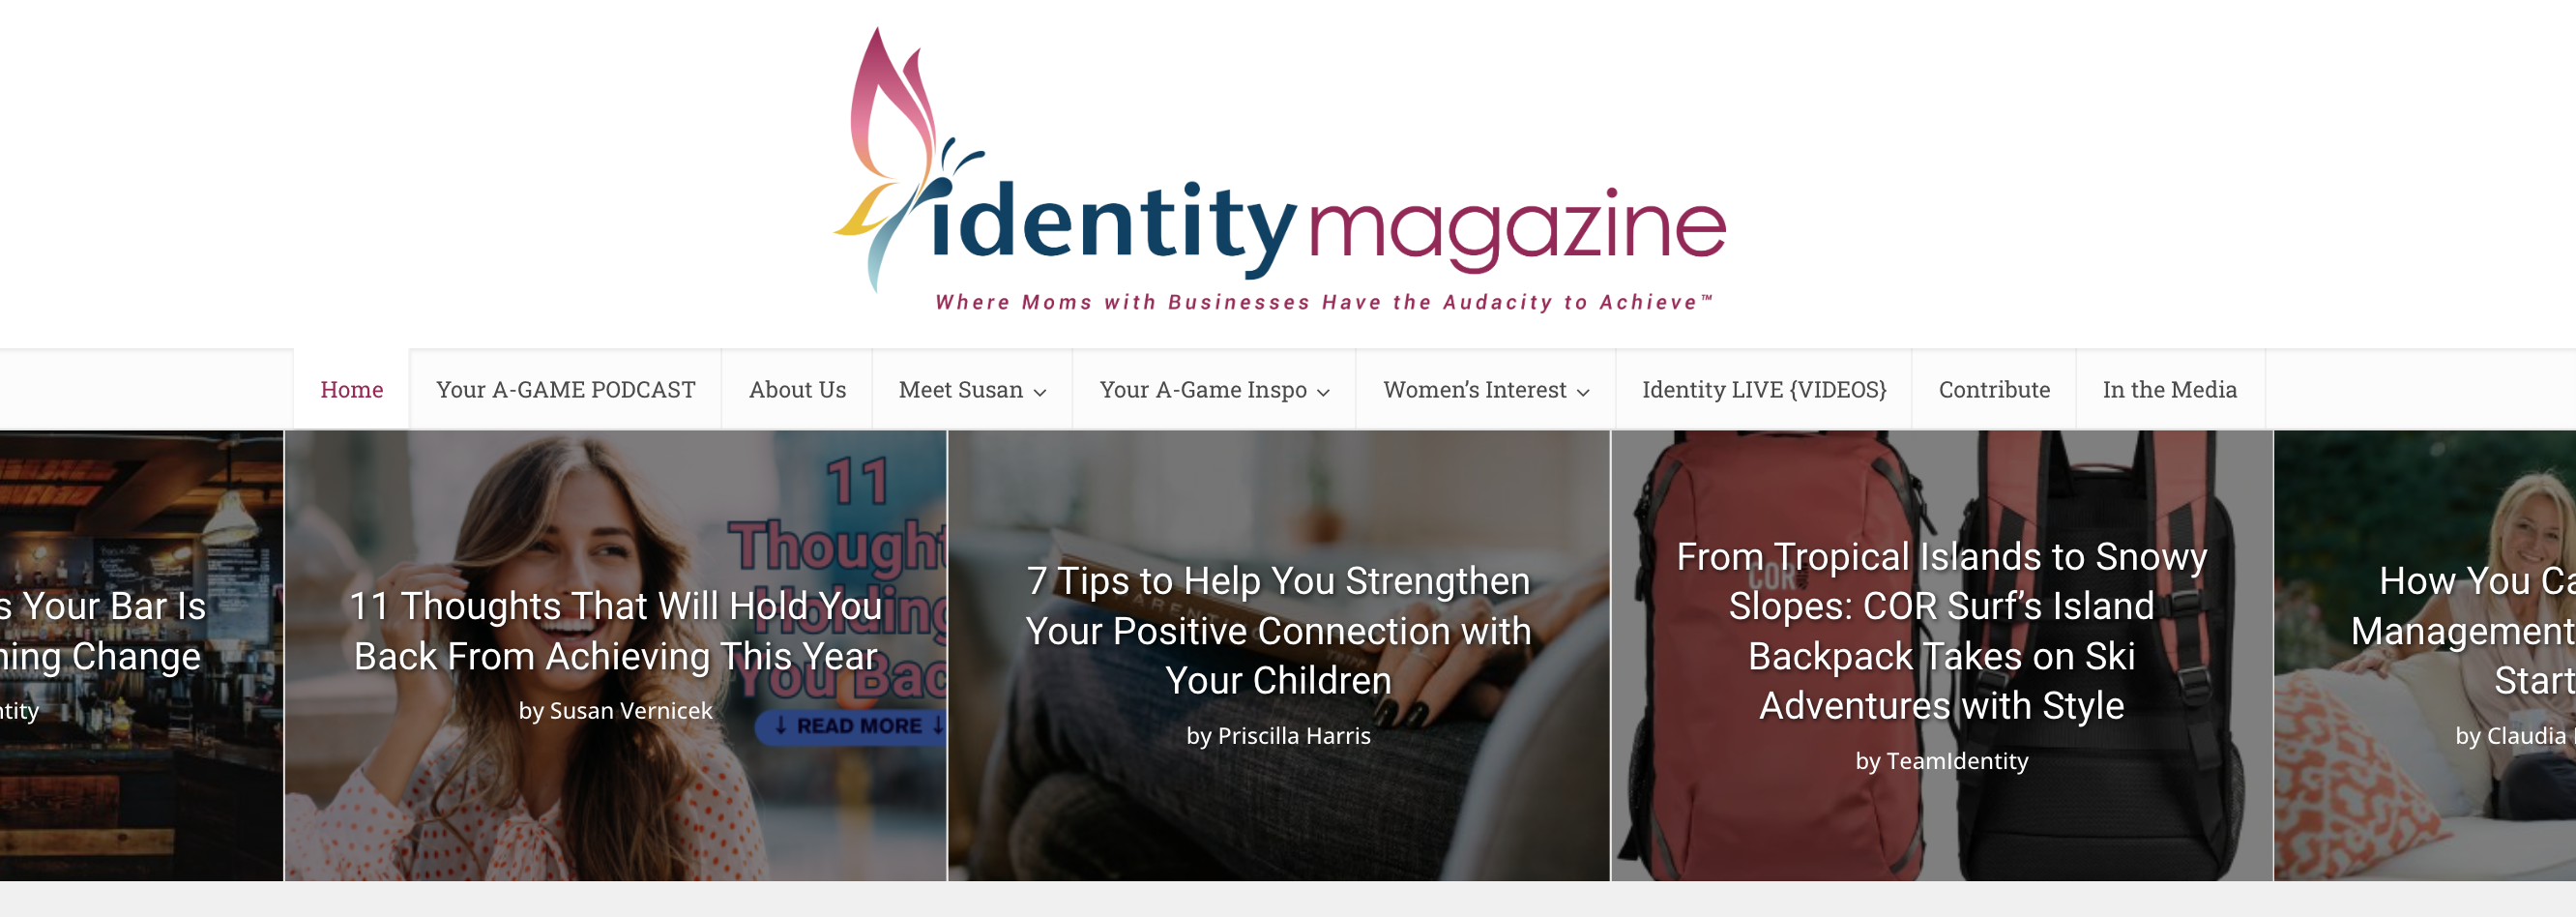 Identity Magazine for Mompreneurs